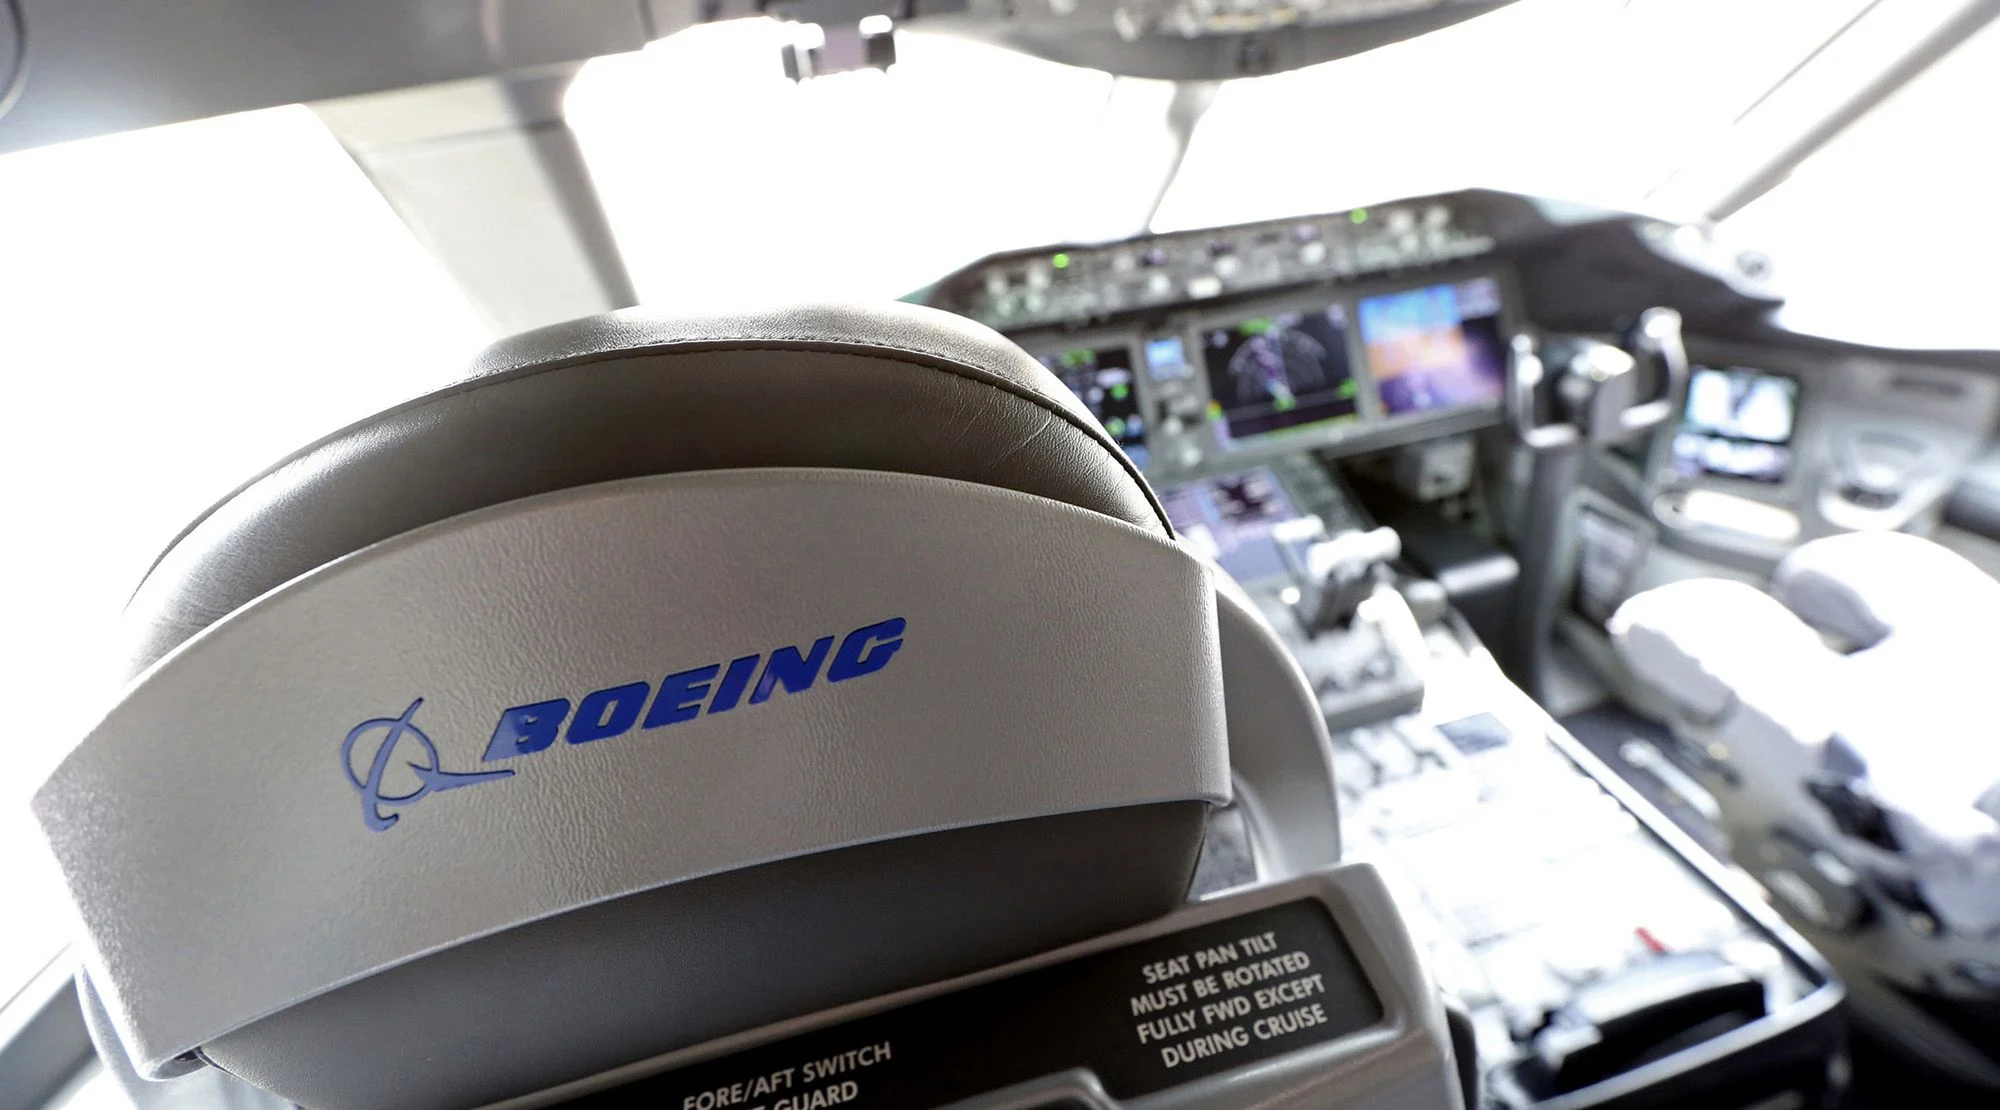 Boeing güvenlik kültüründe ciddi eksiklik iddialarına maruz kalıyor